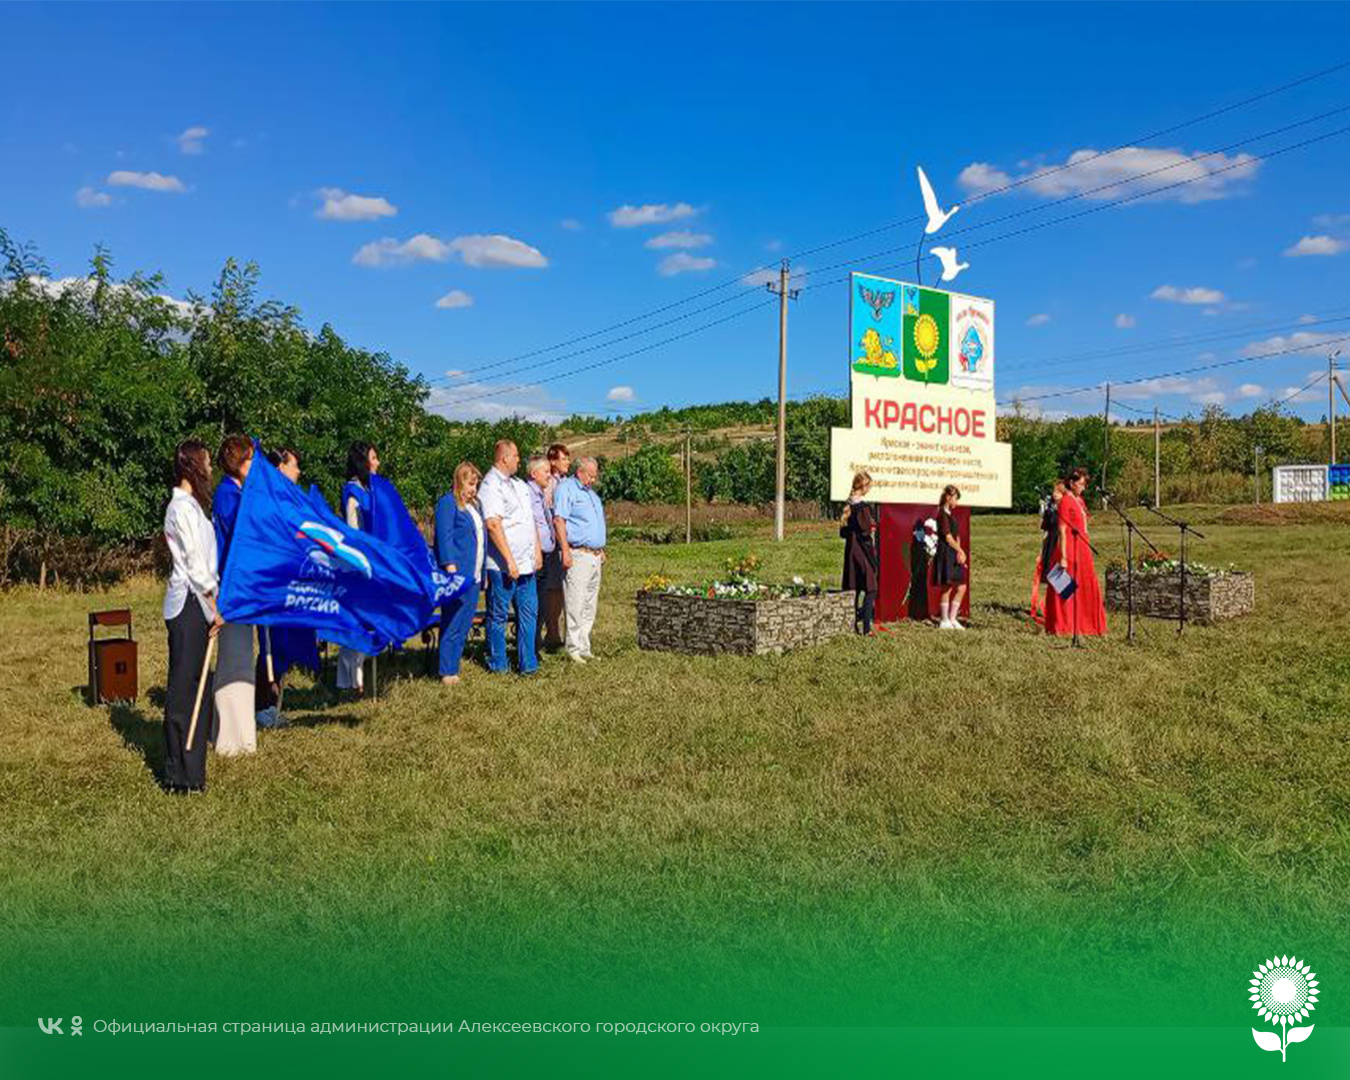 Состоялось торжественное открытие въездной зоны села Красное в рамках проекта «Сердцу милый уголок».